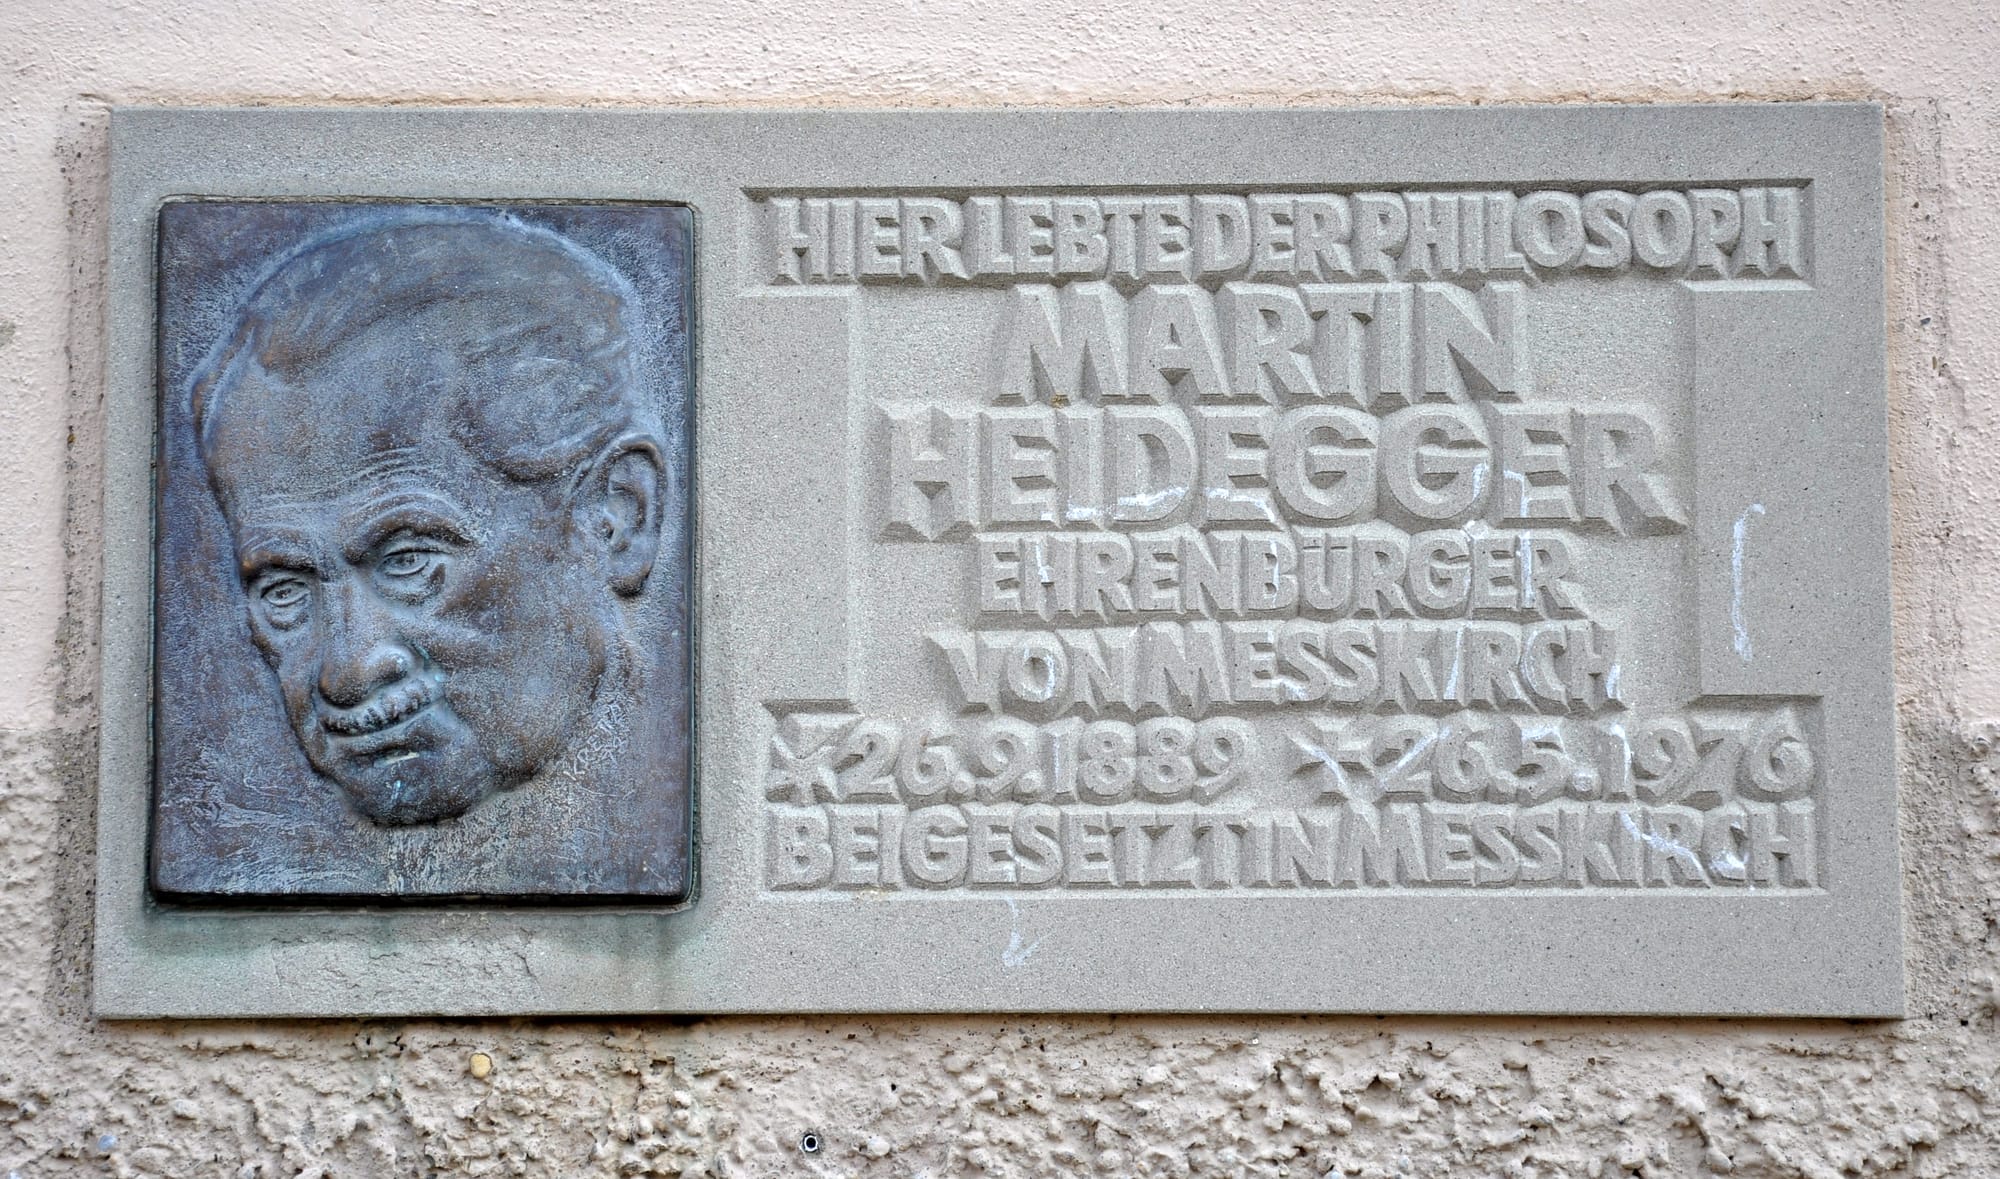 Philosopher Martin Heidegger memorial